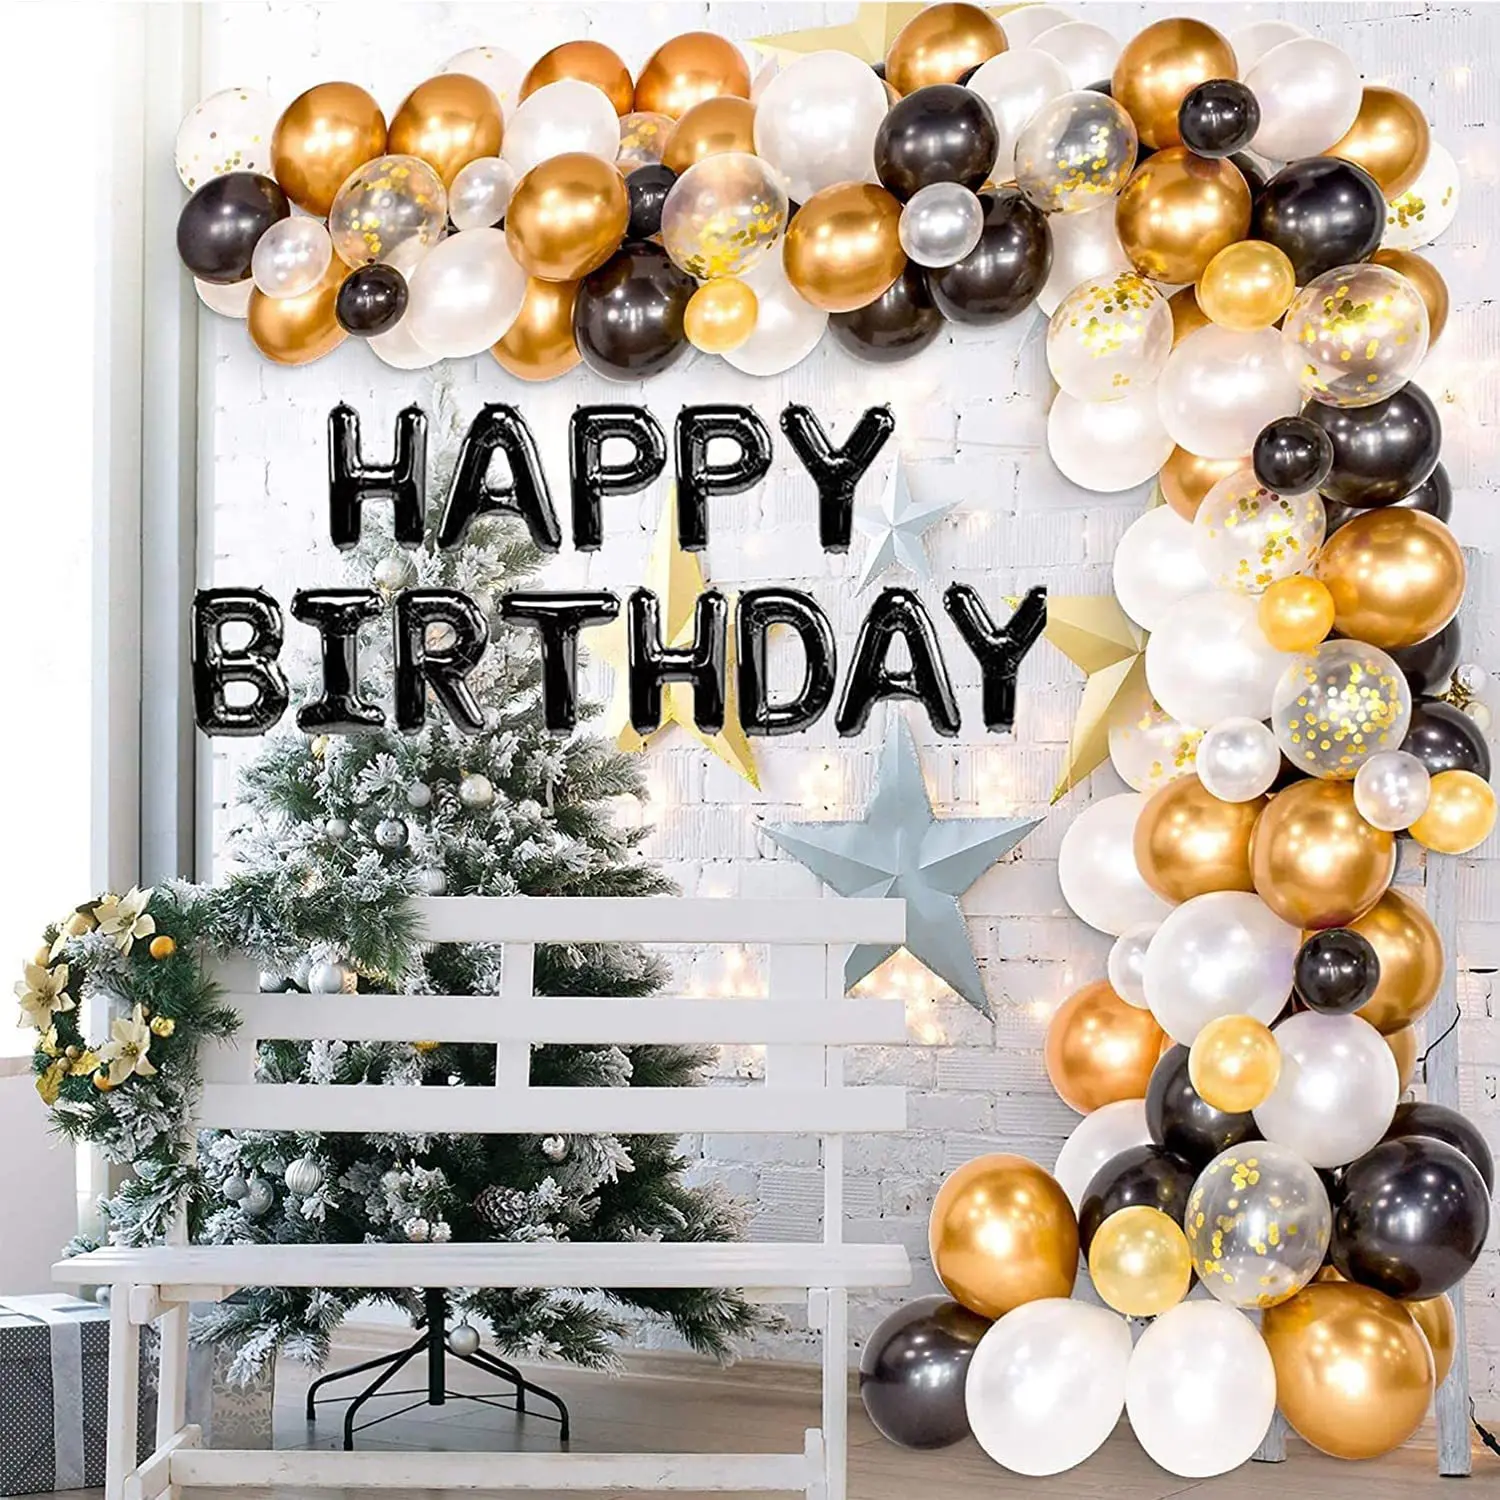 Đồ dùng tiệc sinh nhật: Xem ngay hình ảnh những đồ dùng tiệc sinh nhật đẹp, sáng tạo và đầy màu sắc để trang trí bữa tiệc của bạn. Hãy chuẩn bị để có một bữa tiệc sinh nhật hoàn hảo nhất.